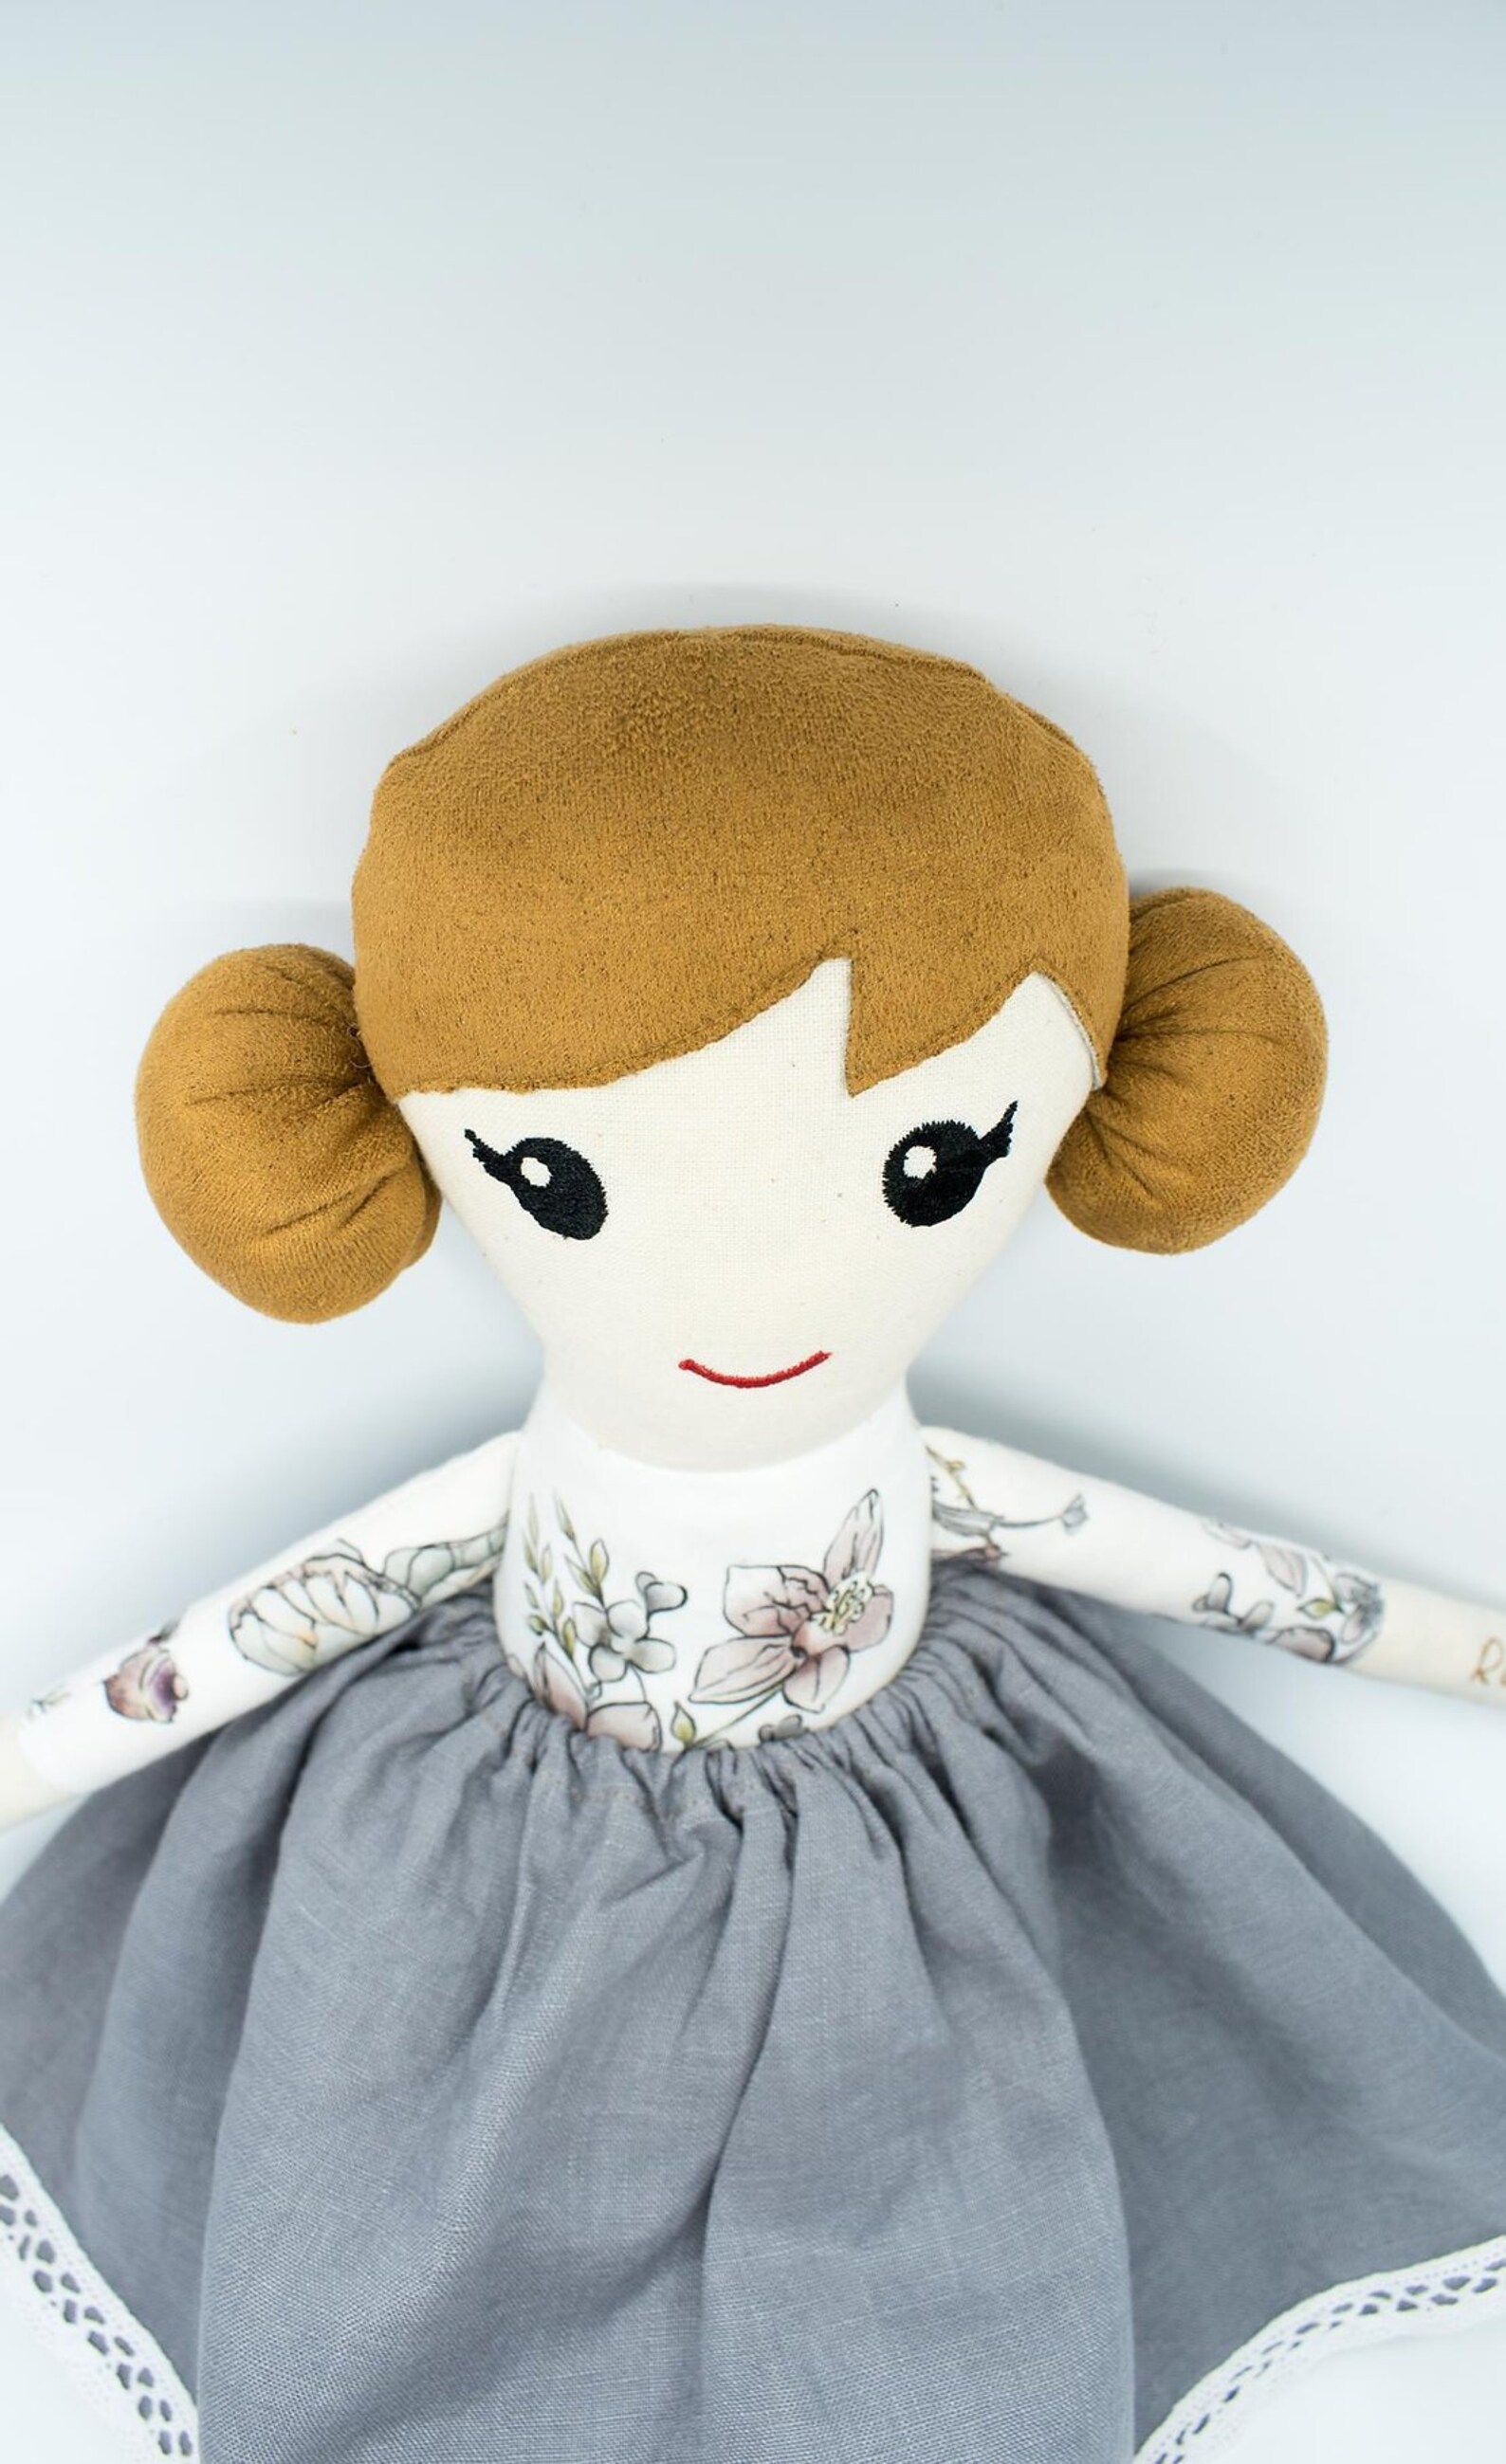 Handmade cloth doll stuffed dolly plush dolly hand sewn | Etsy